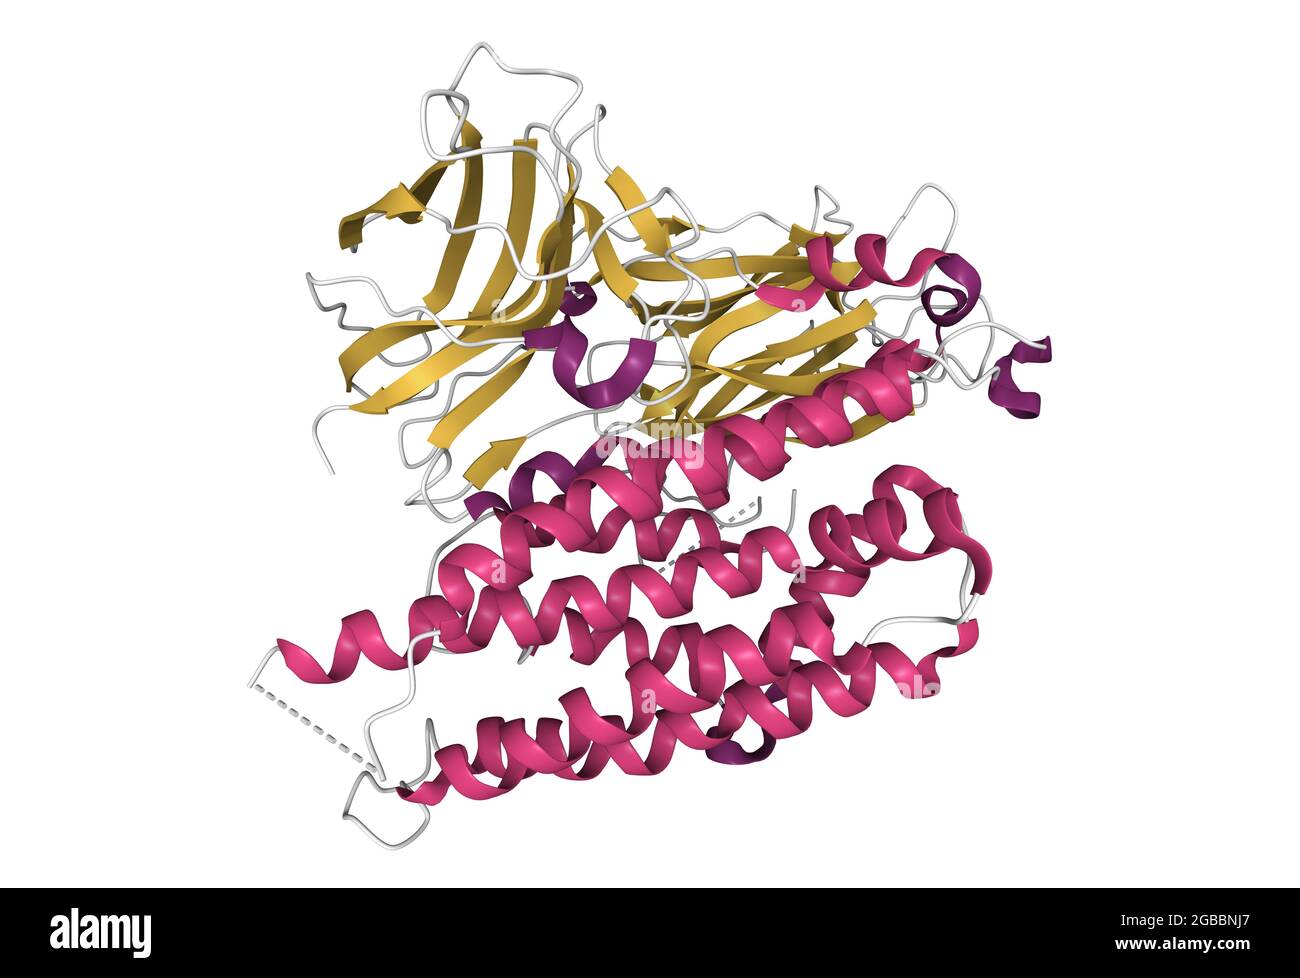 Struttura della forma funzionale della tossina Cry4Aa zanzara-larvicida di Bacillus thuringiensis, modello cartoon 3D, PDB 2c9k, sfondo bianco Foto Stock